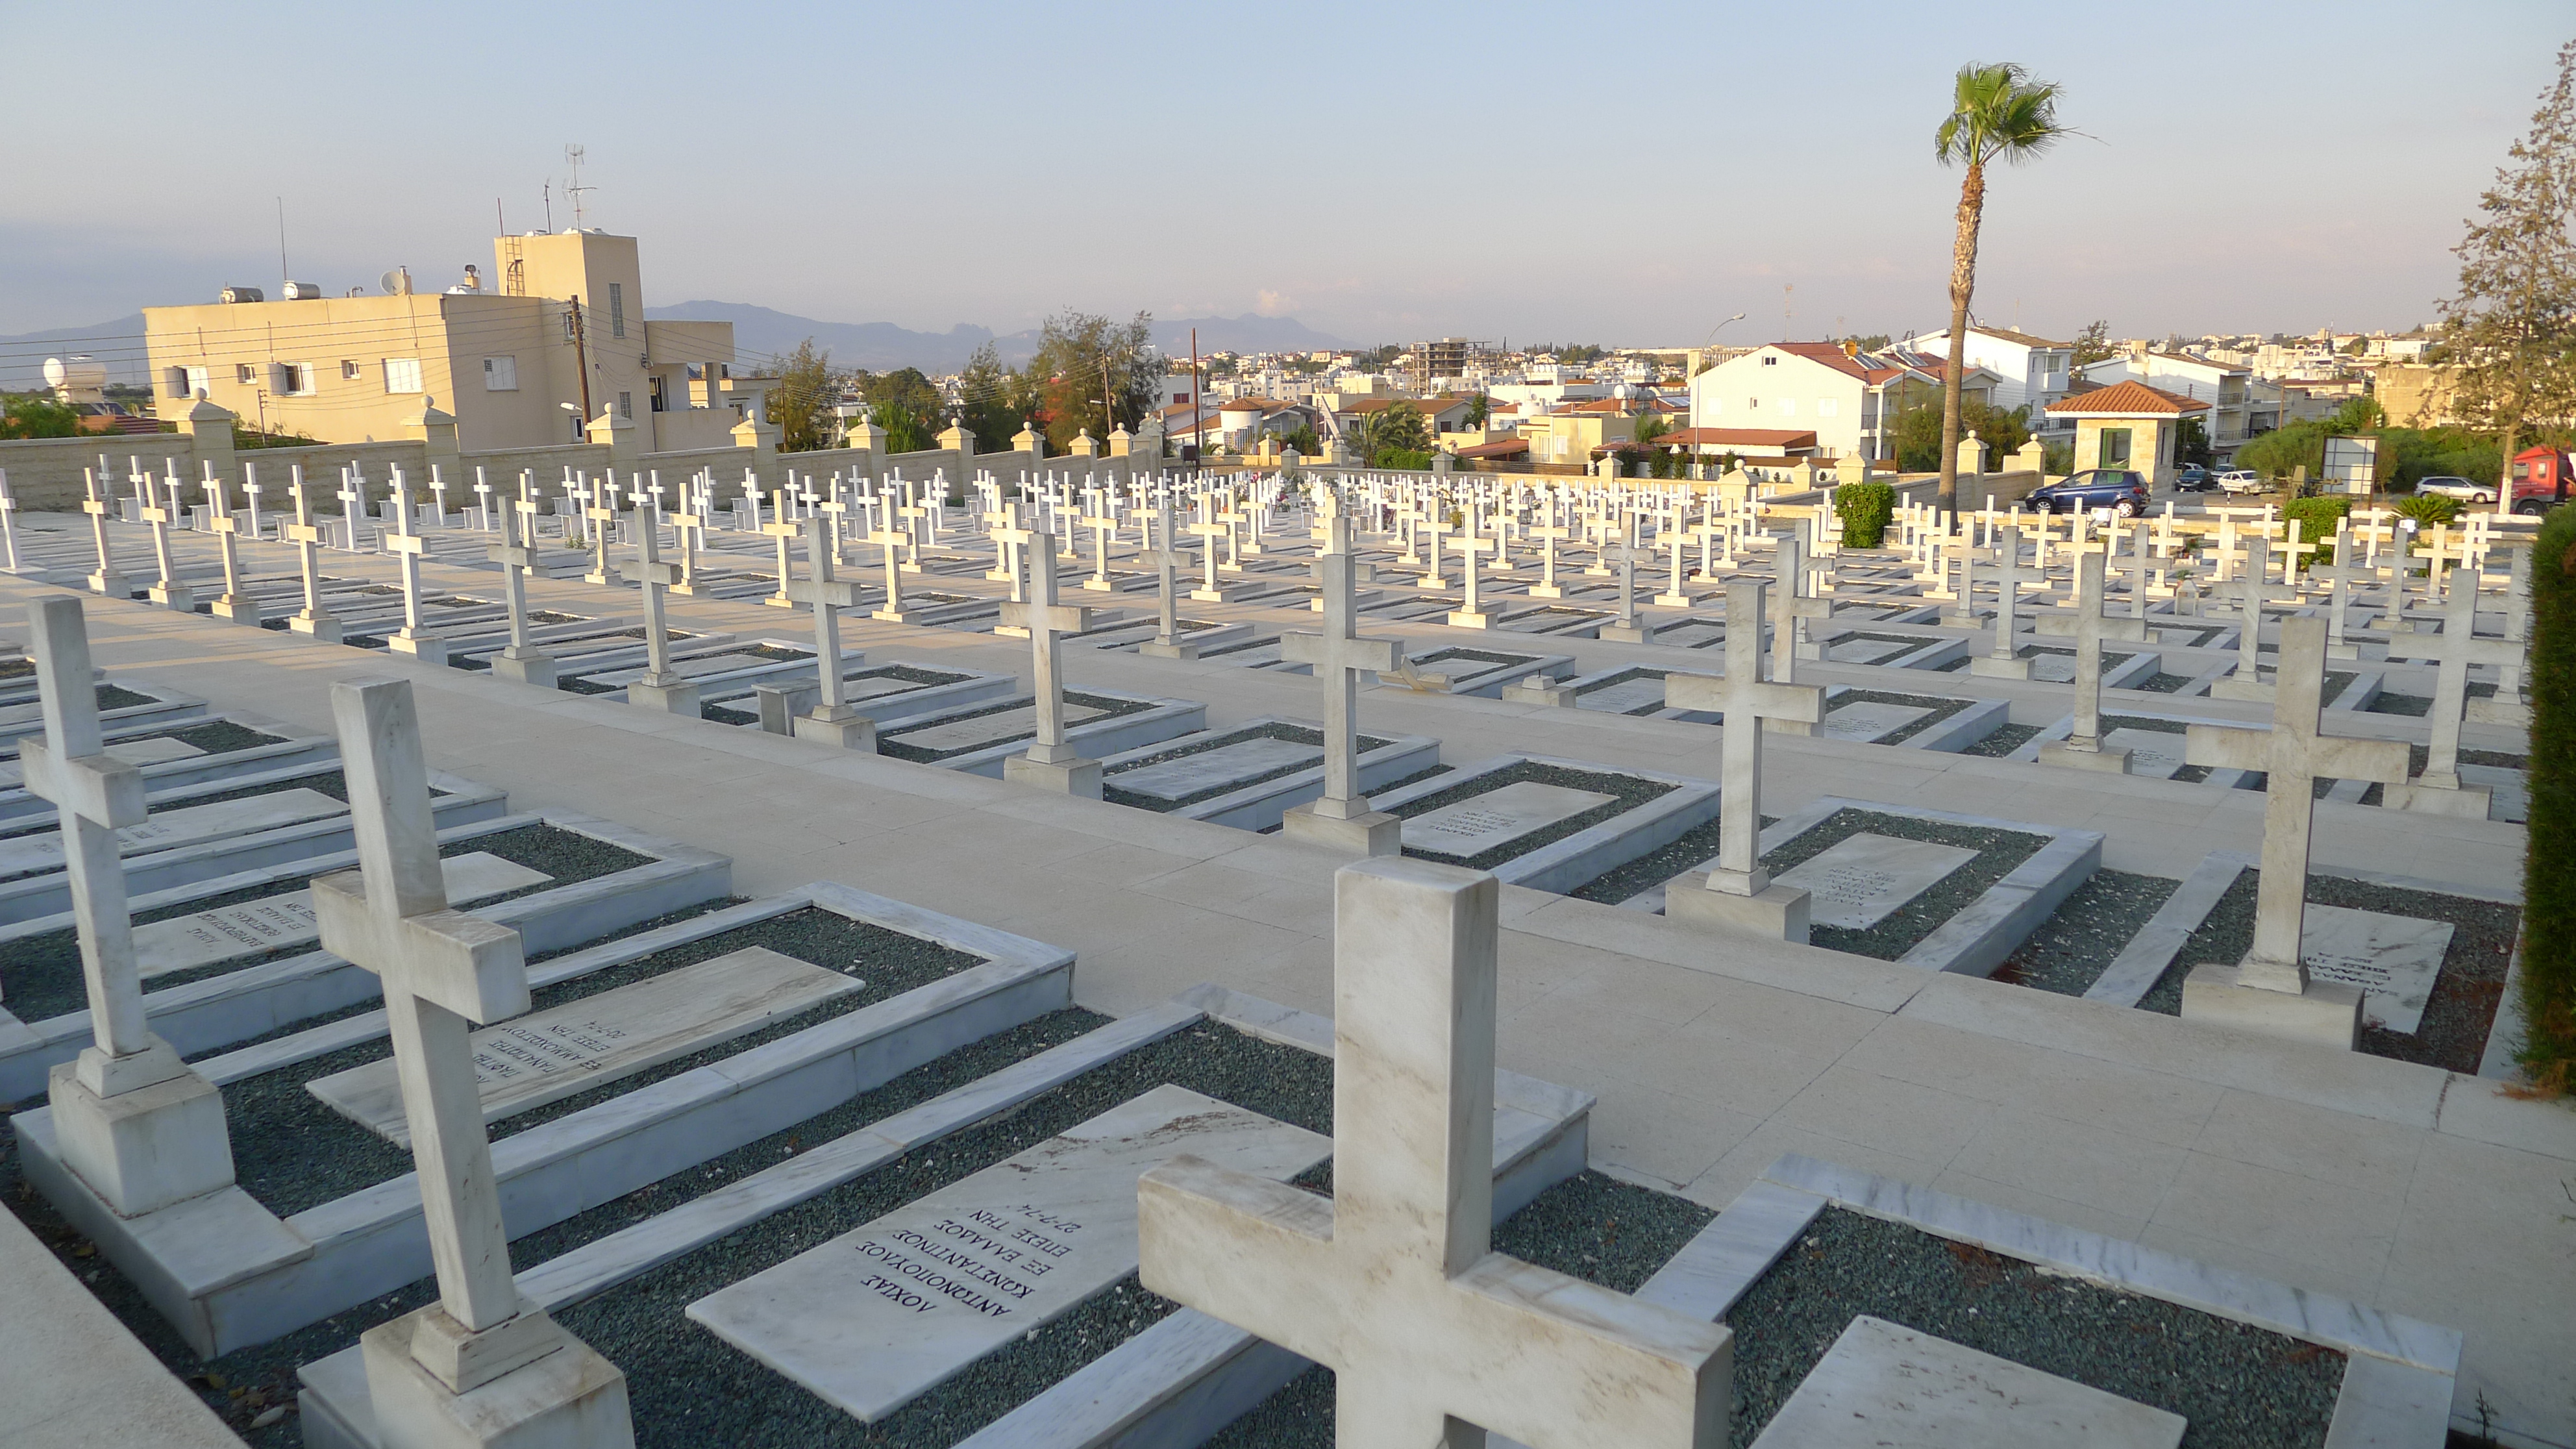 Τύμβος Μακεδονίτισσας/ Στρατιωτικό Κοιμητήριο Μακεδονίτισσας (Έγκωμη,  Λευκωσία)